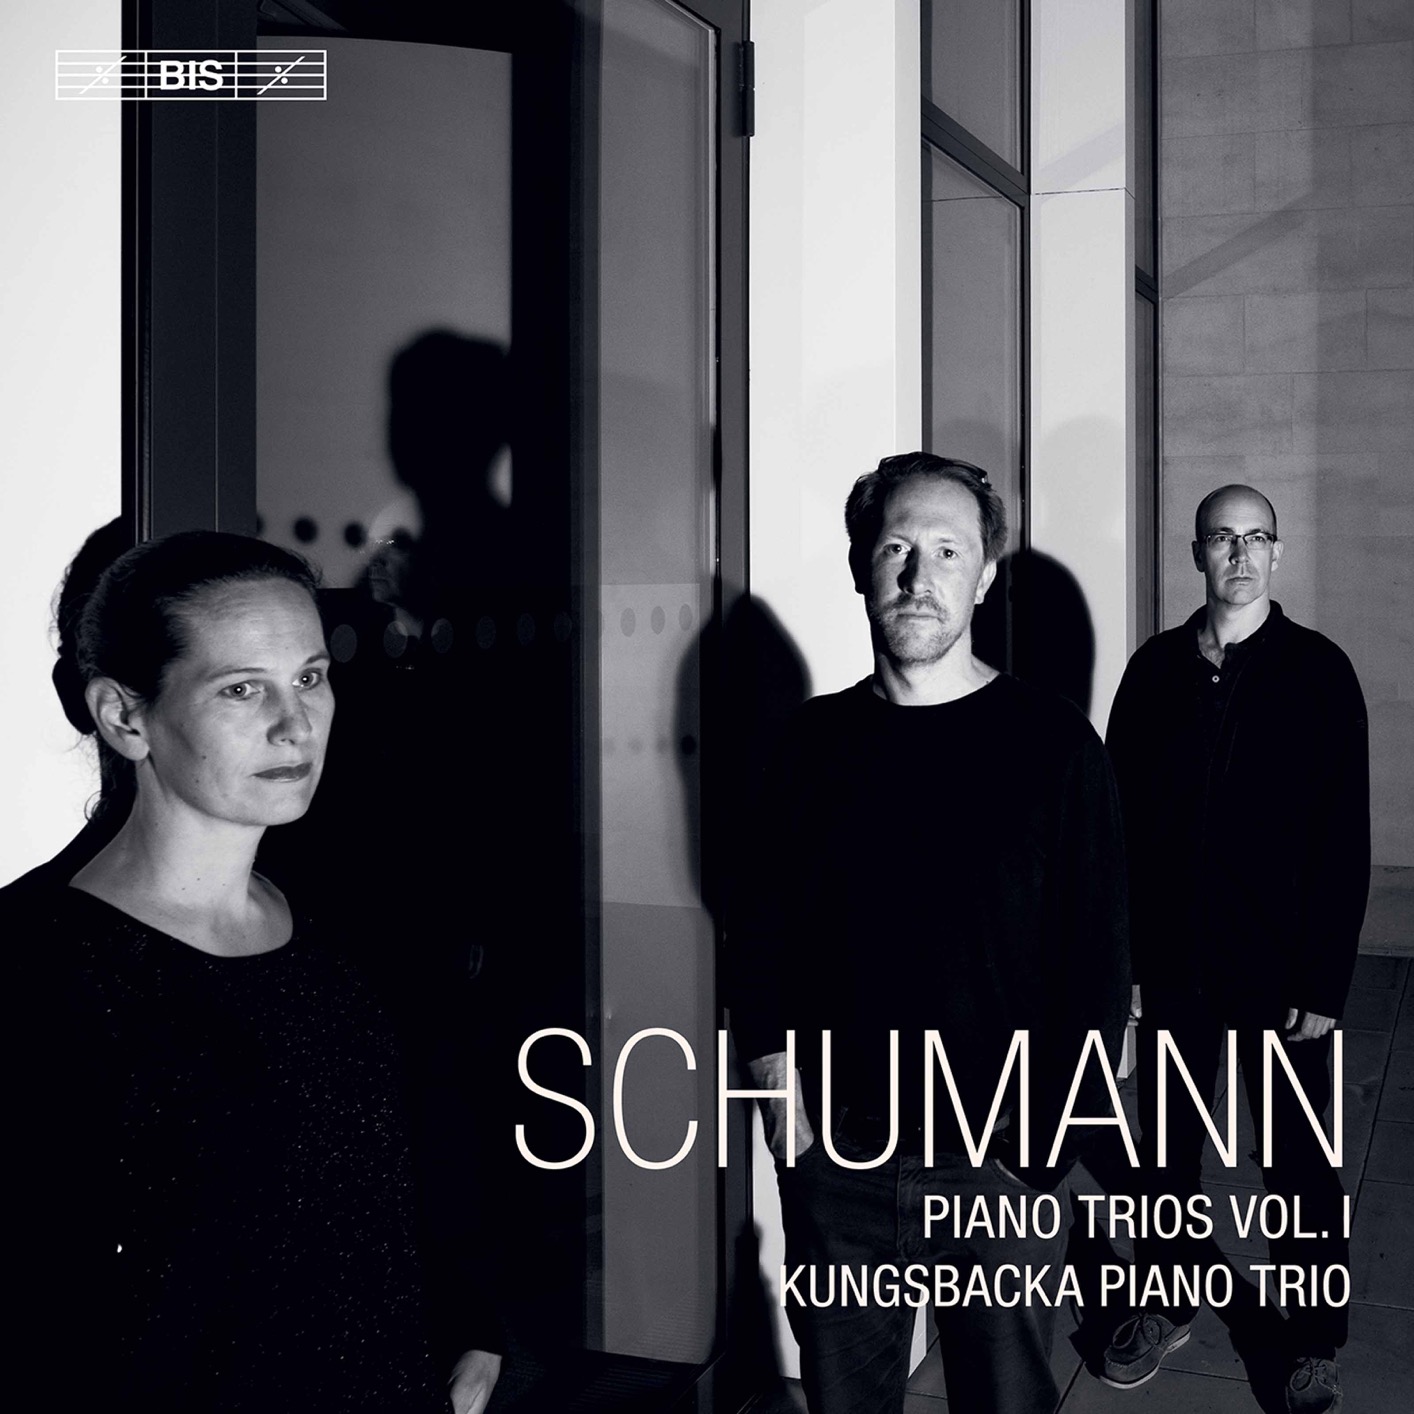 Kungsbacka Piano Trio - R. Schumann: Piano Trios, Vol. 1 (2020) [FLAC 24bit/96kHz]